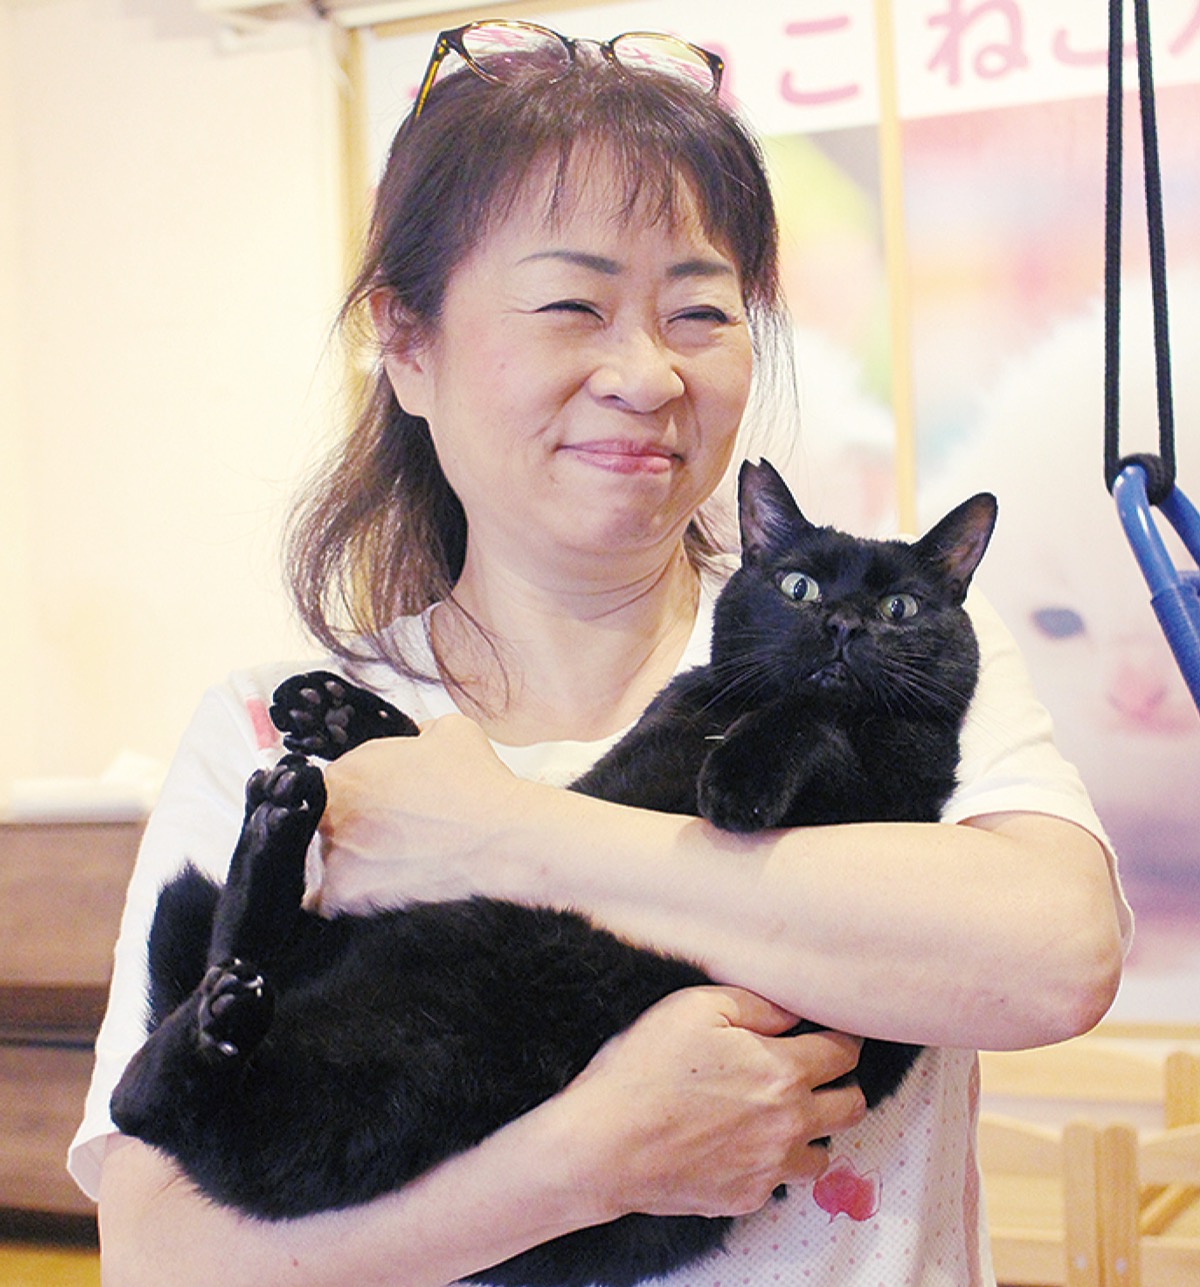 多摩市落合のｎｐｏ法人 高齢の人と猫を結びつけ 生活の糧に 猫の幸せにも 多摩 タウンニュース